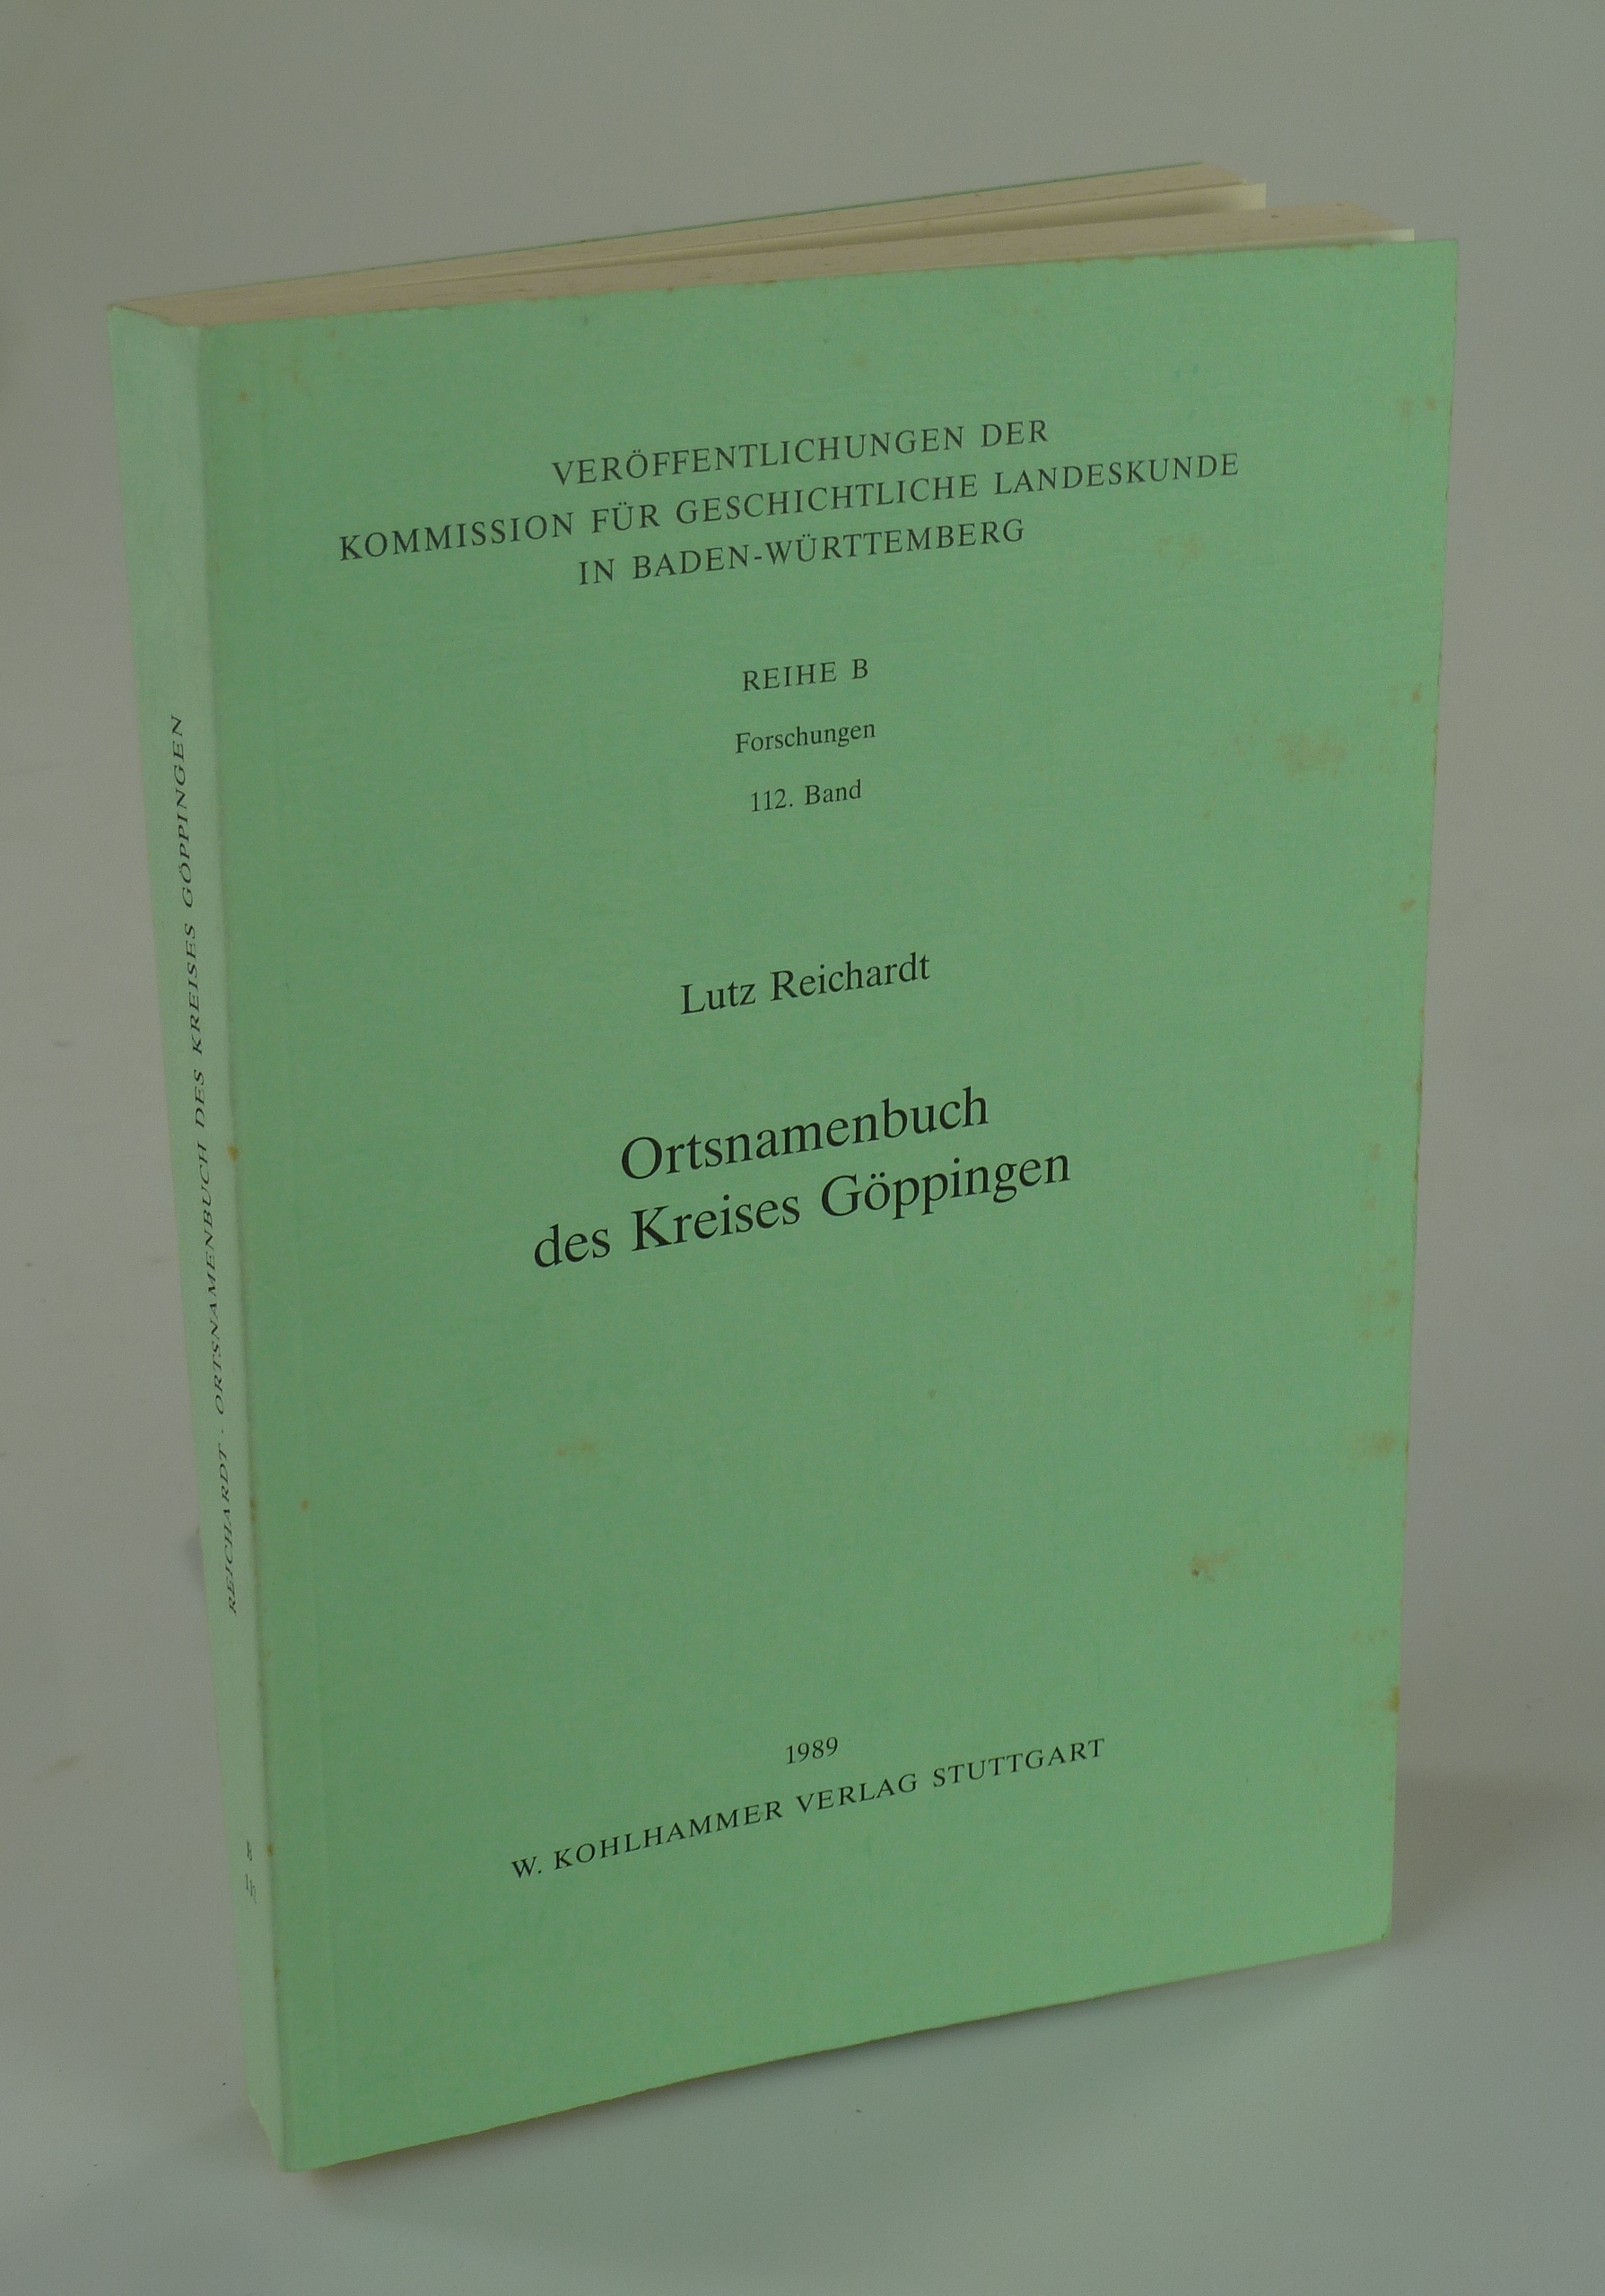 Ortsnamenbuch des Kreises Göppingen. - REICHARDT, Lutz.